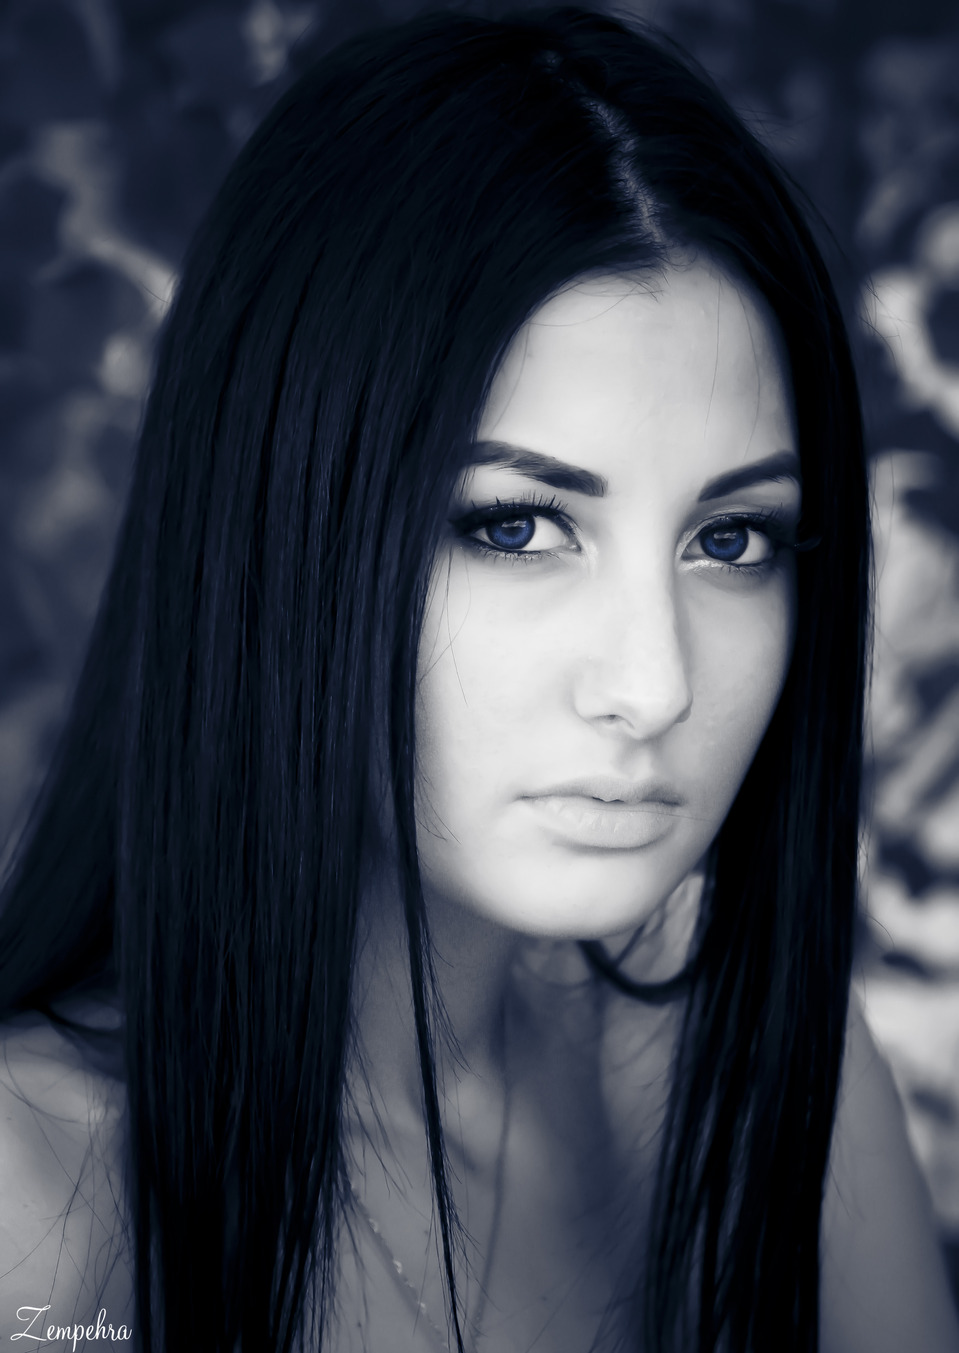 cute girl (long dark blue hair) detailed face, cute